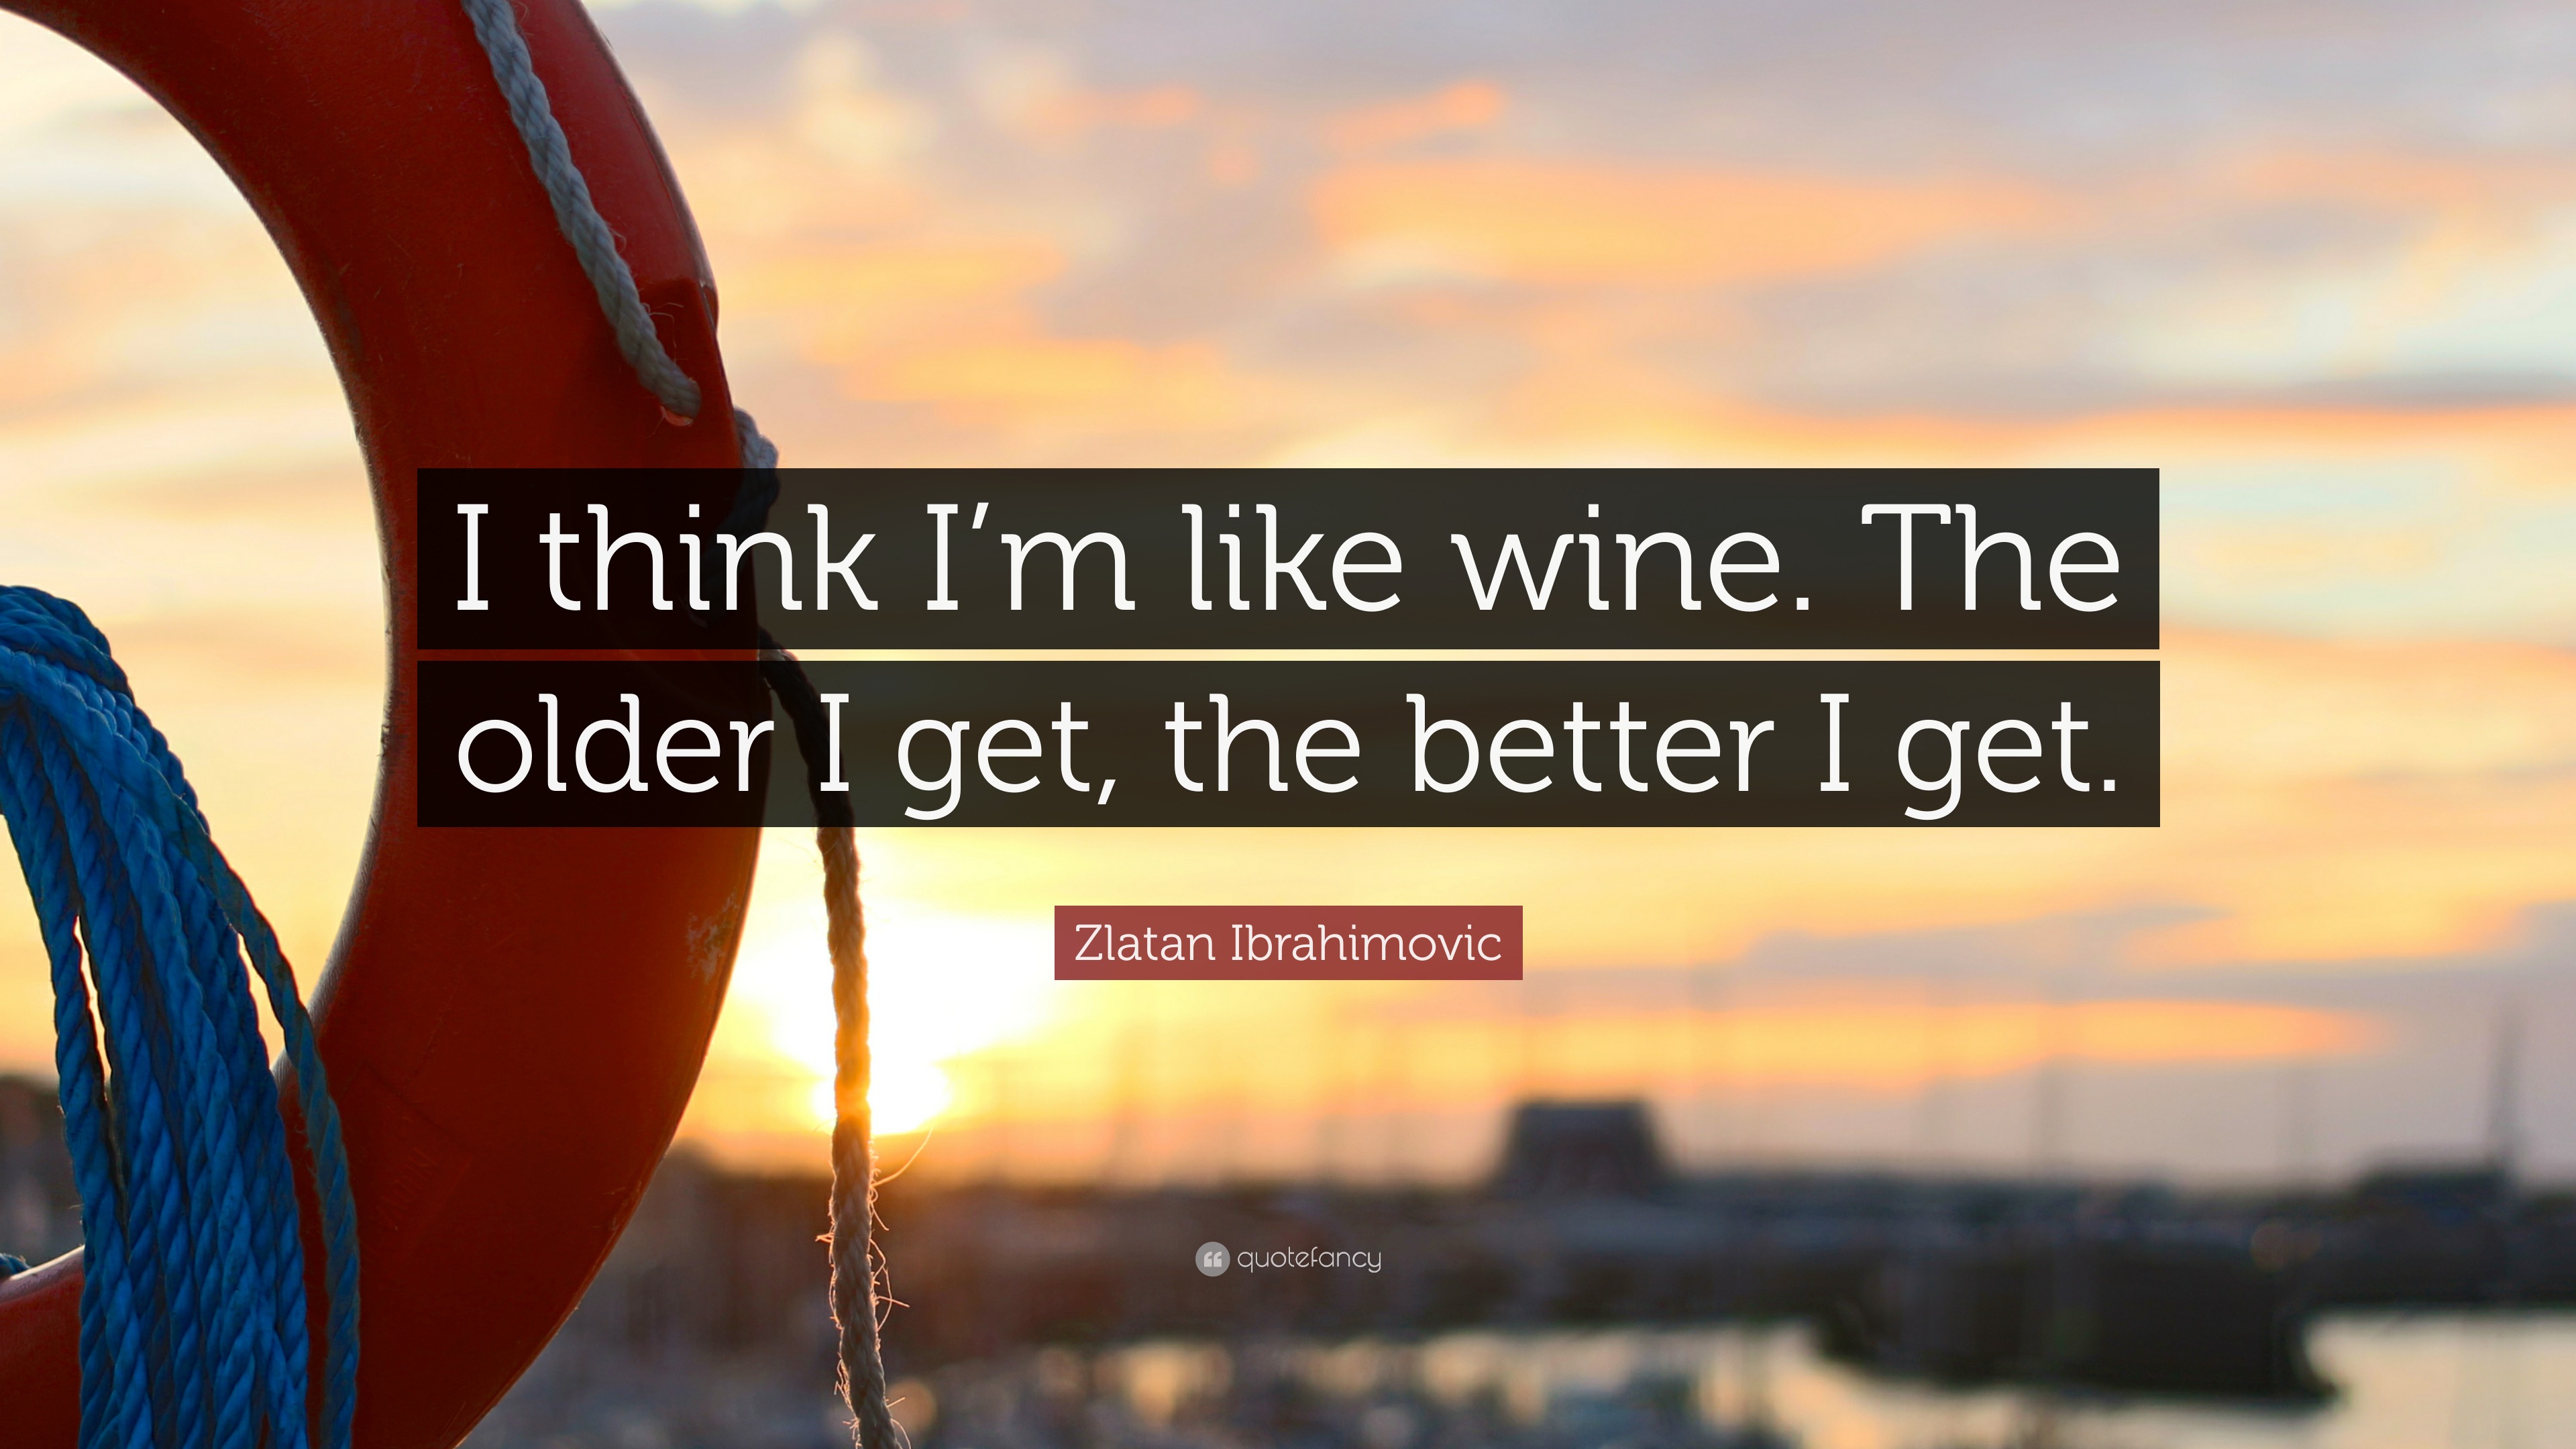 Zlatan Ibrahimovic Quote “I think I m like wine The older I